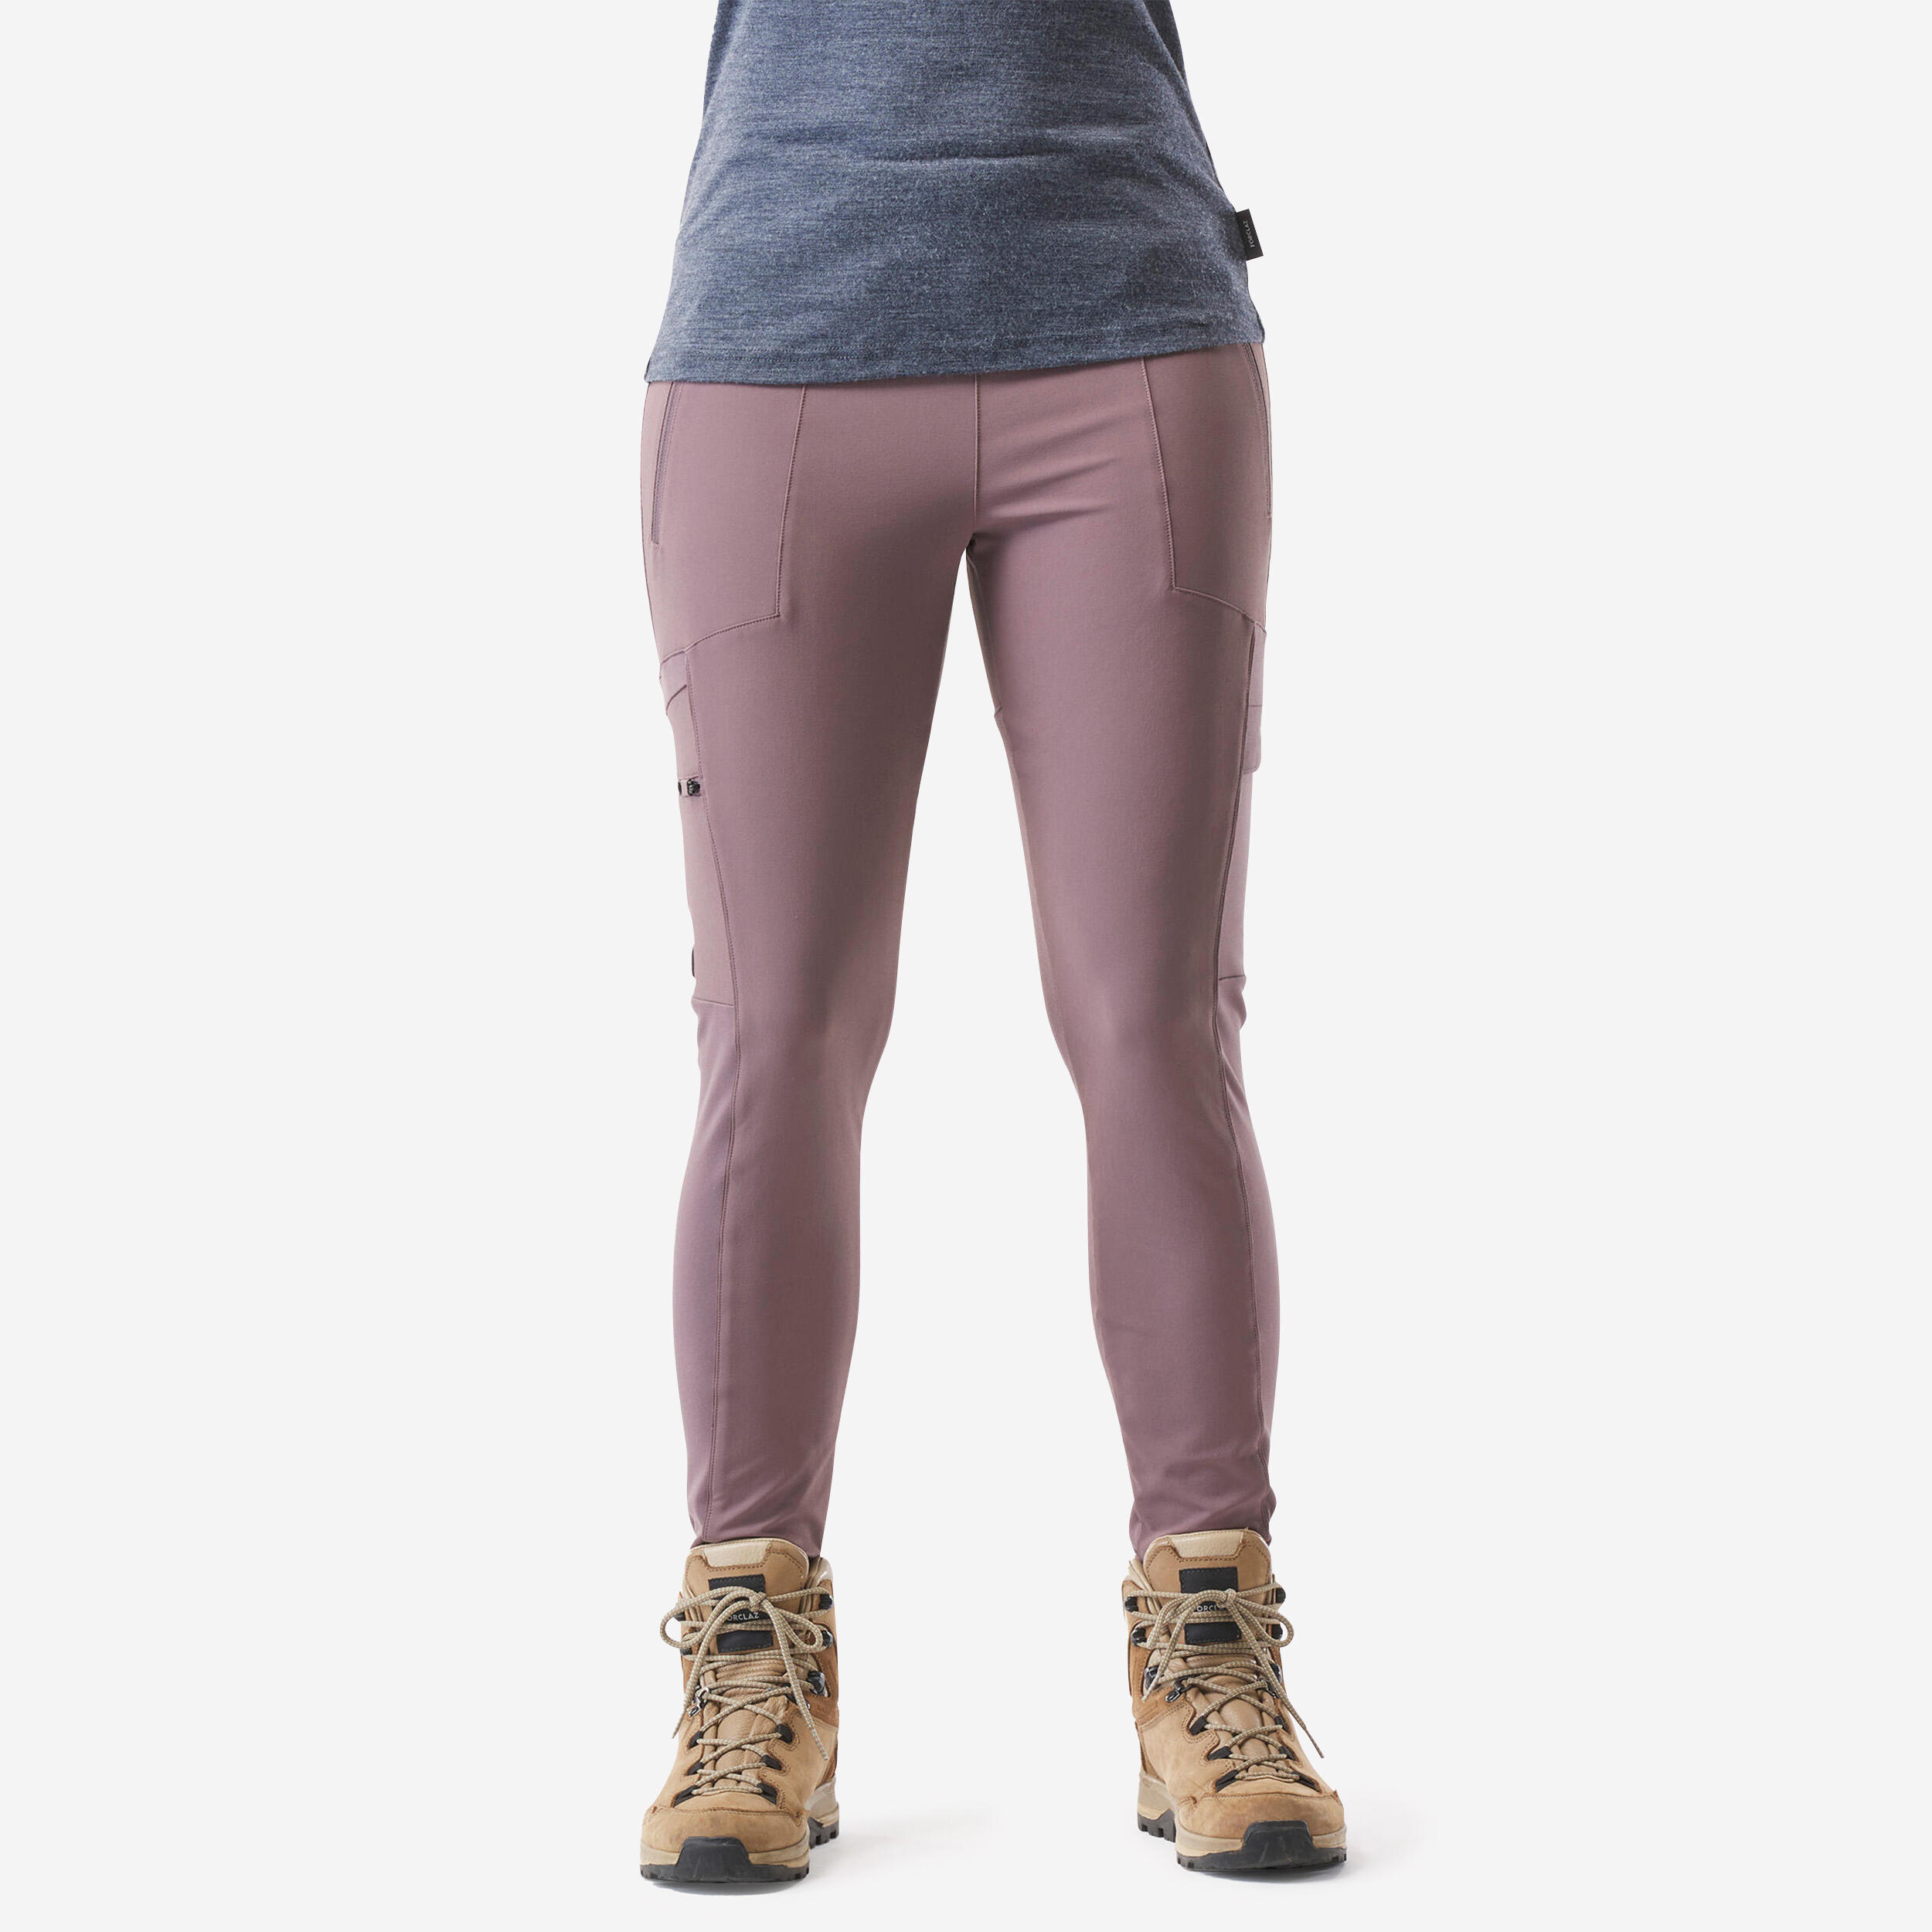 legging de trekking & voyage resistant - travel 500 - violet - femme - forclaz